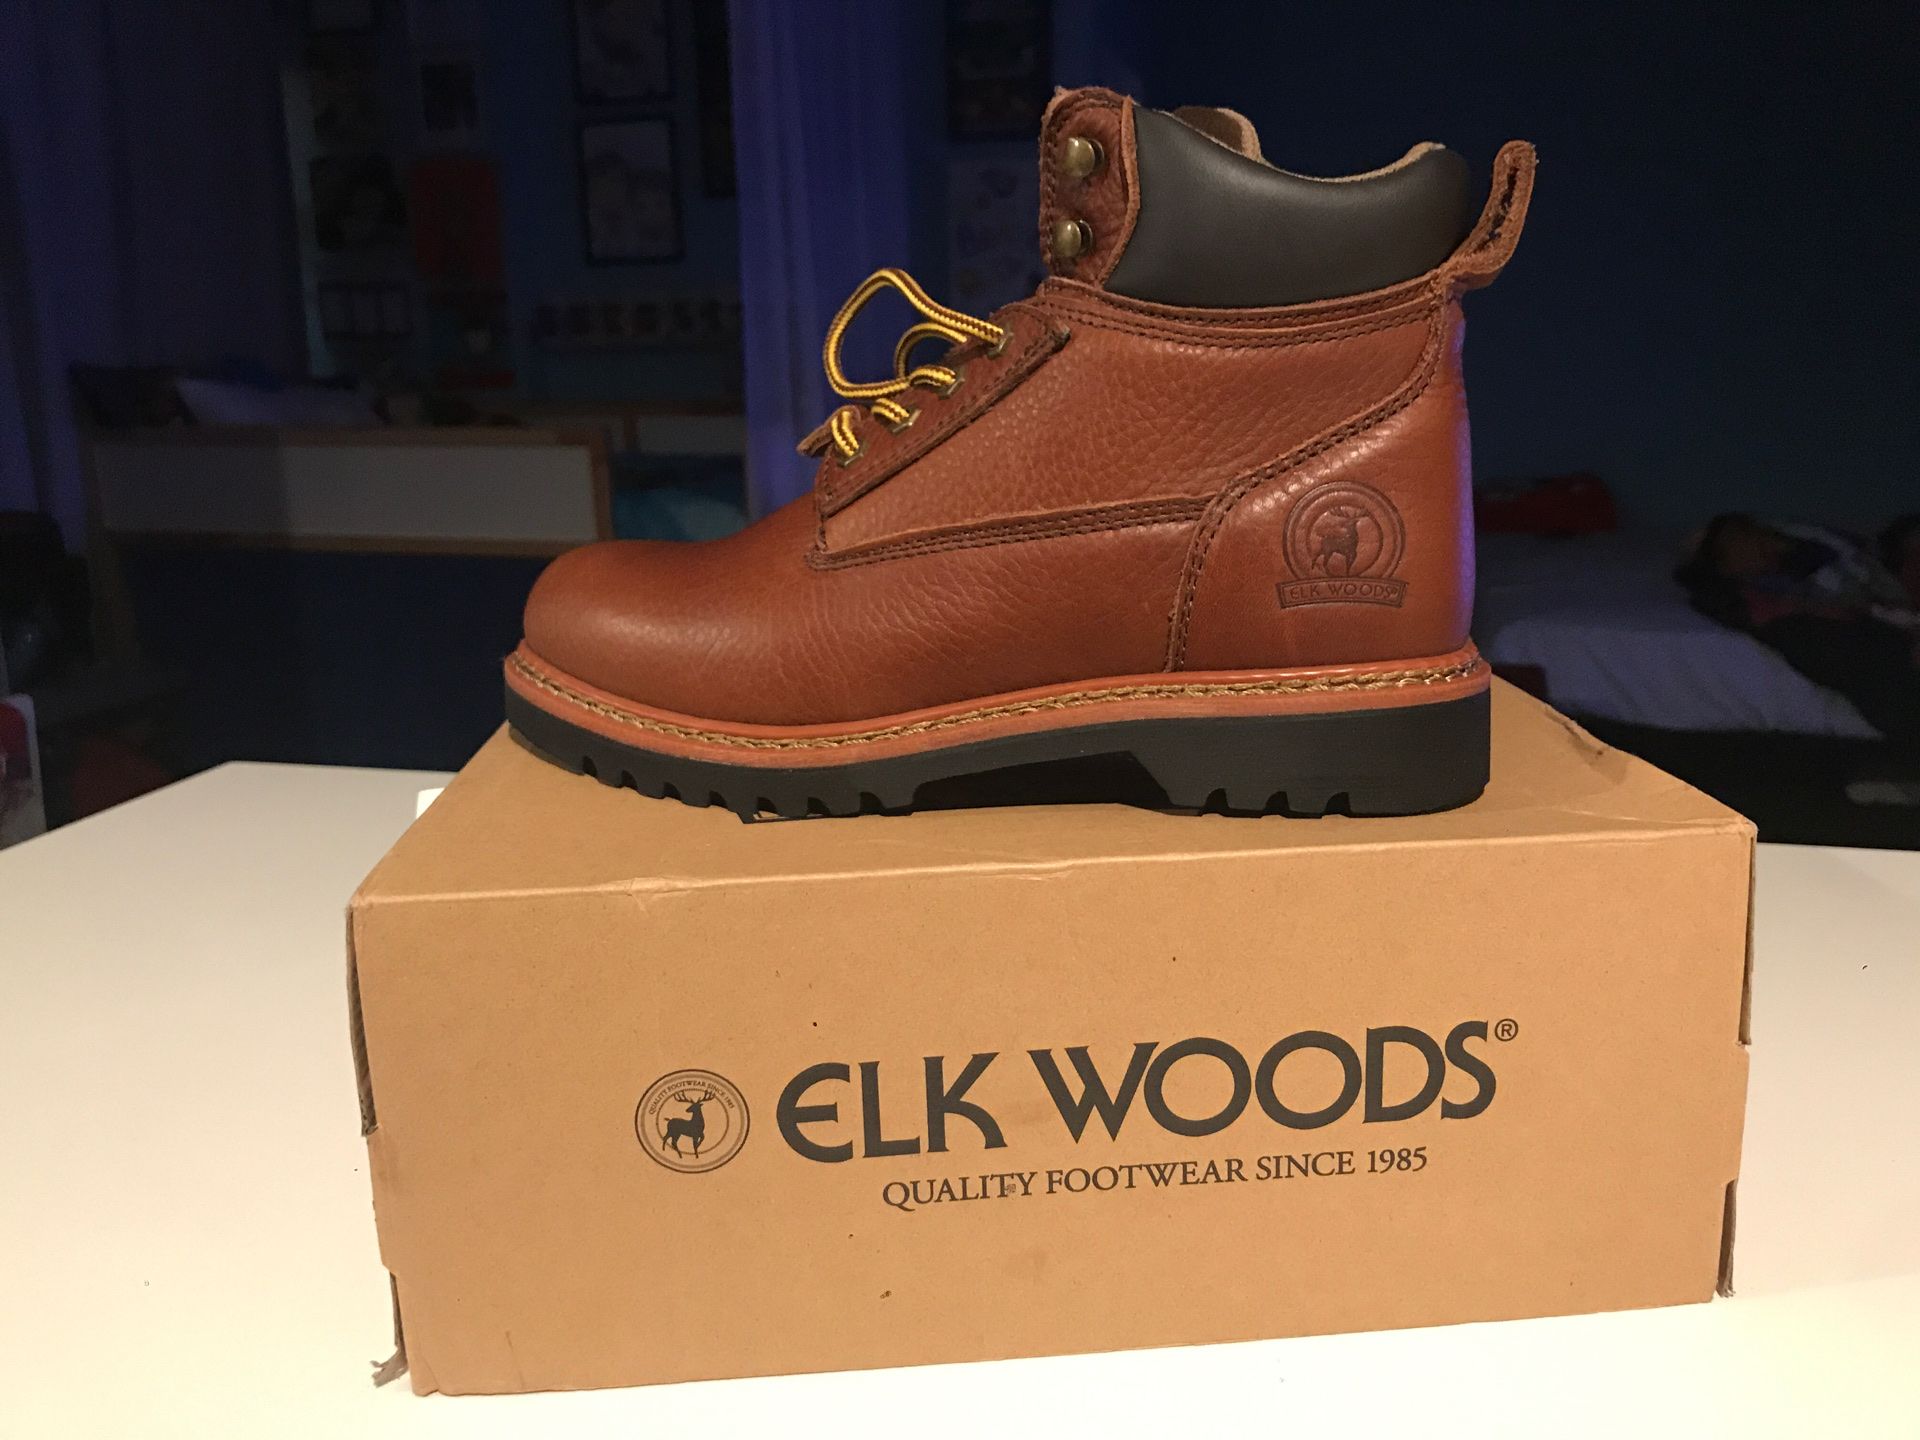 Elk woods boots